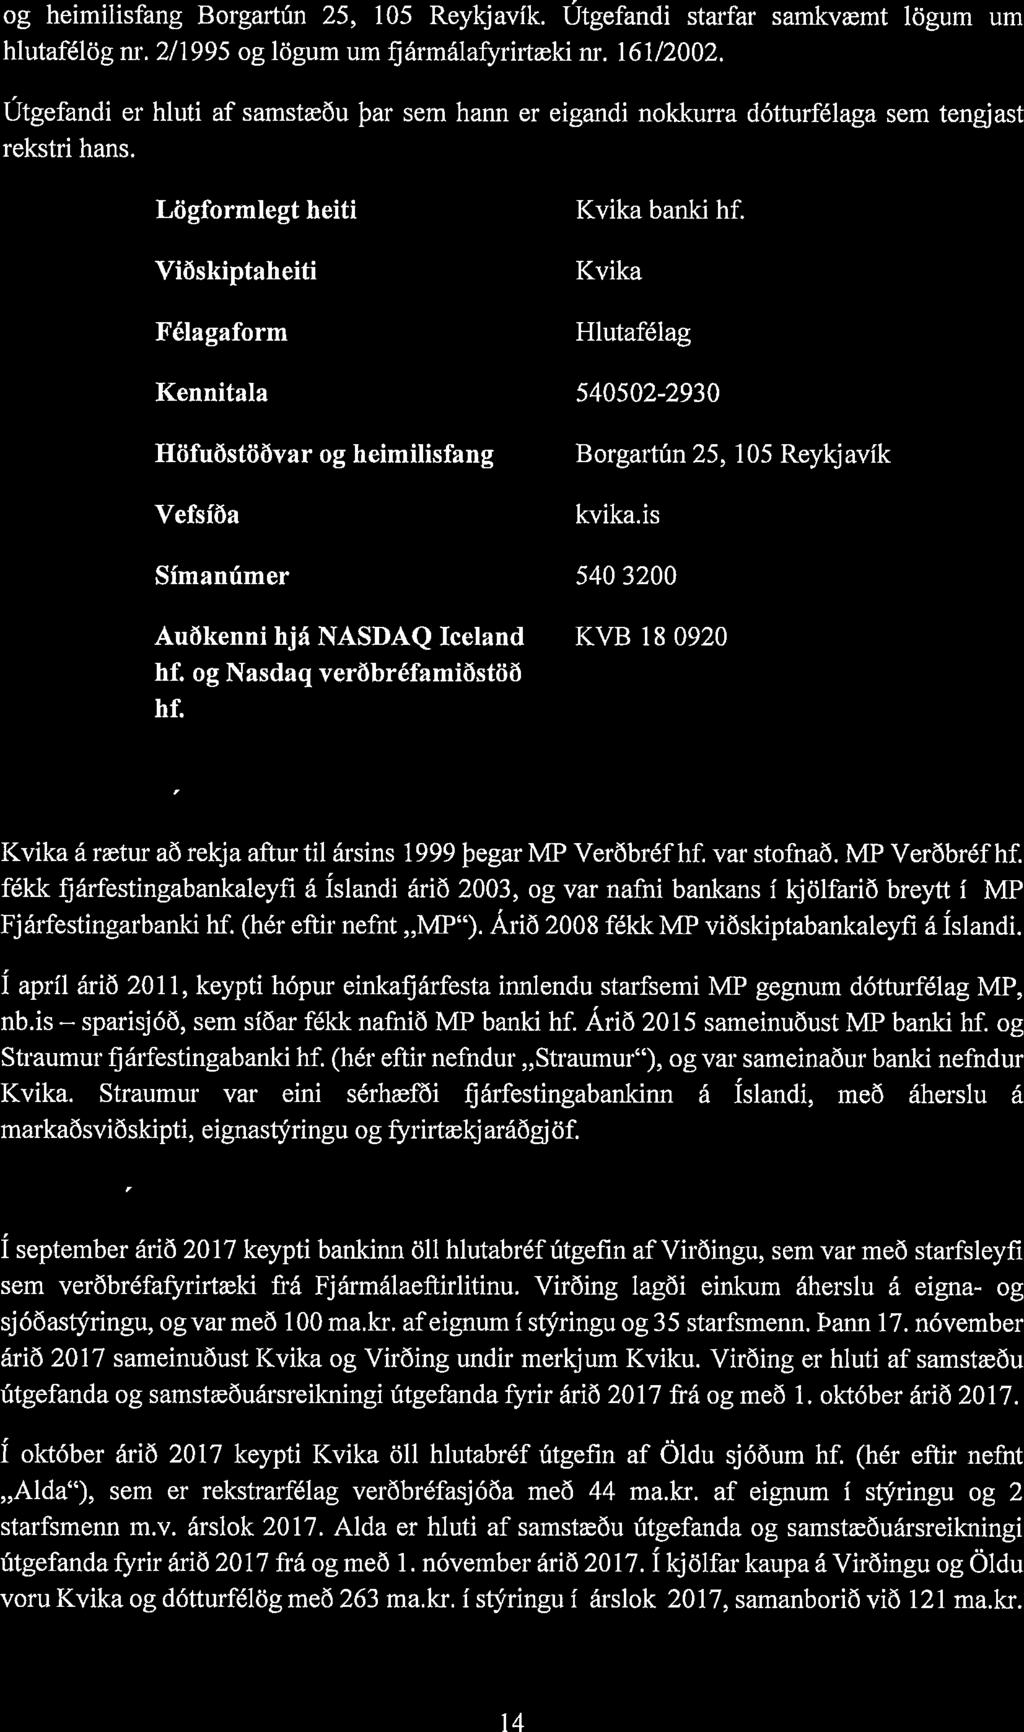 ÍIíIJ K V J. K A og heimilisfang Borgartfin 25, 105 Reykjavik. utgefandi starfar samkvæmt lögum urn hlutafélög nr. 2/1995 og lögum um fjármálafyrirtæki nr. 161/2002.